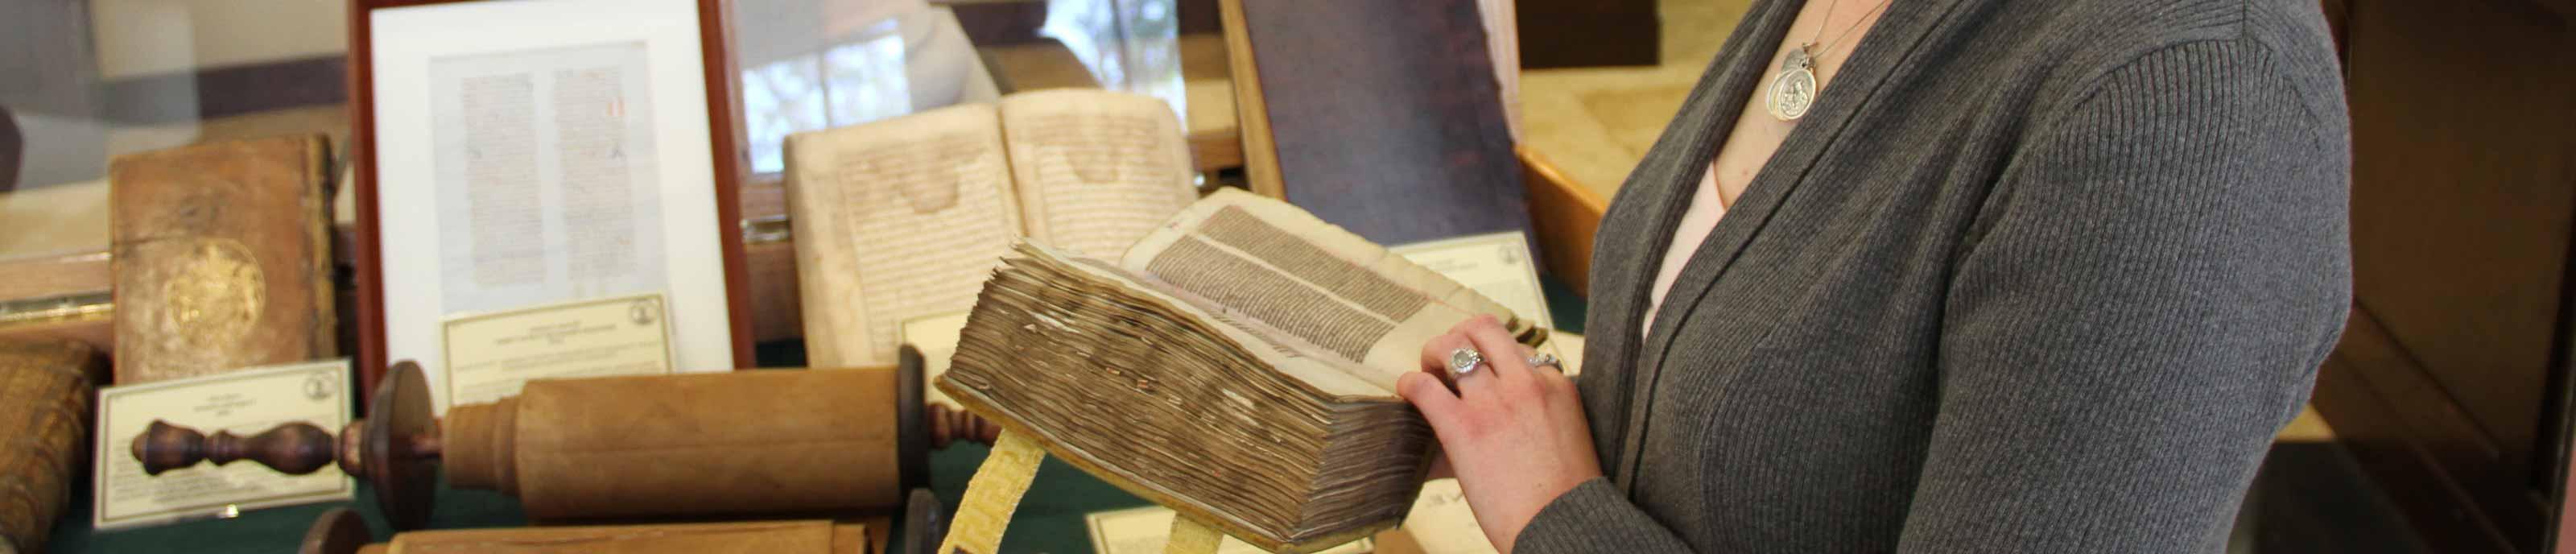 在“时代的智慧”展览中，一名学生正在研究一本古书